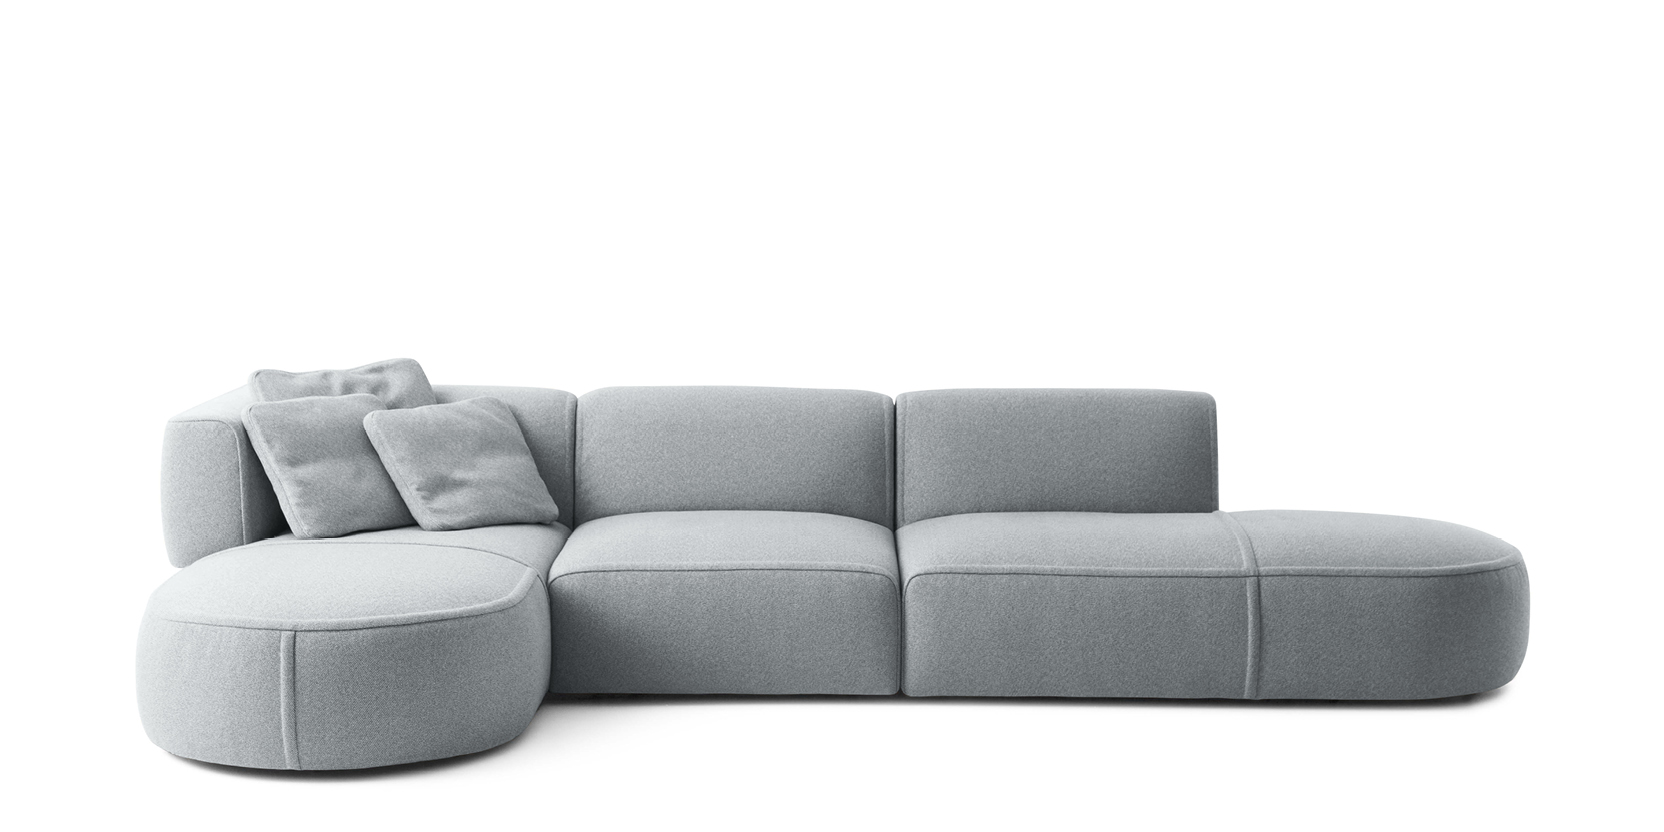 Bowy Sofa by Patricia Urquiola | Cassina